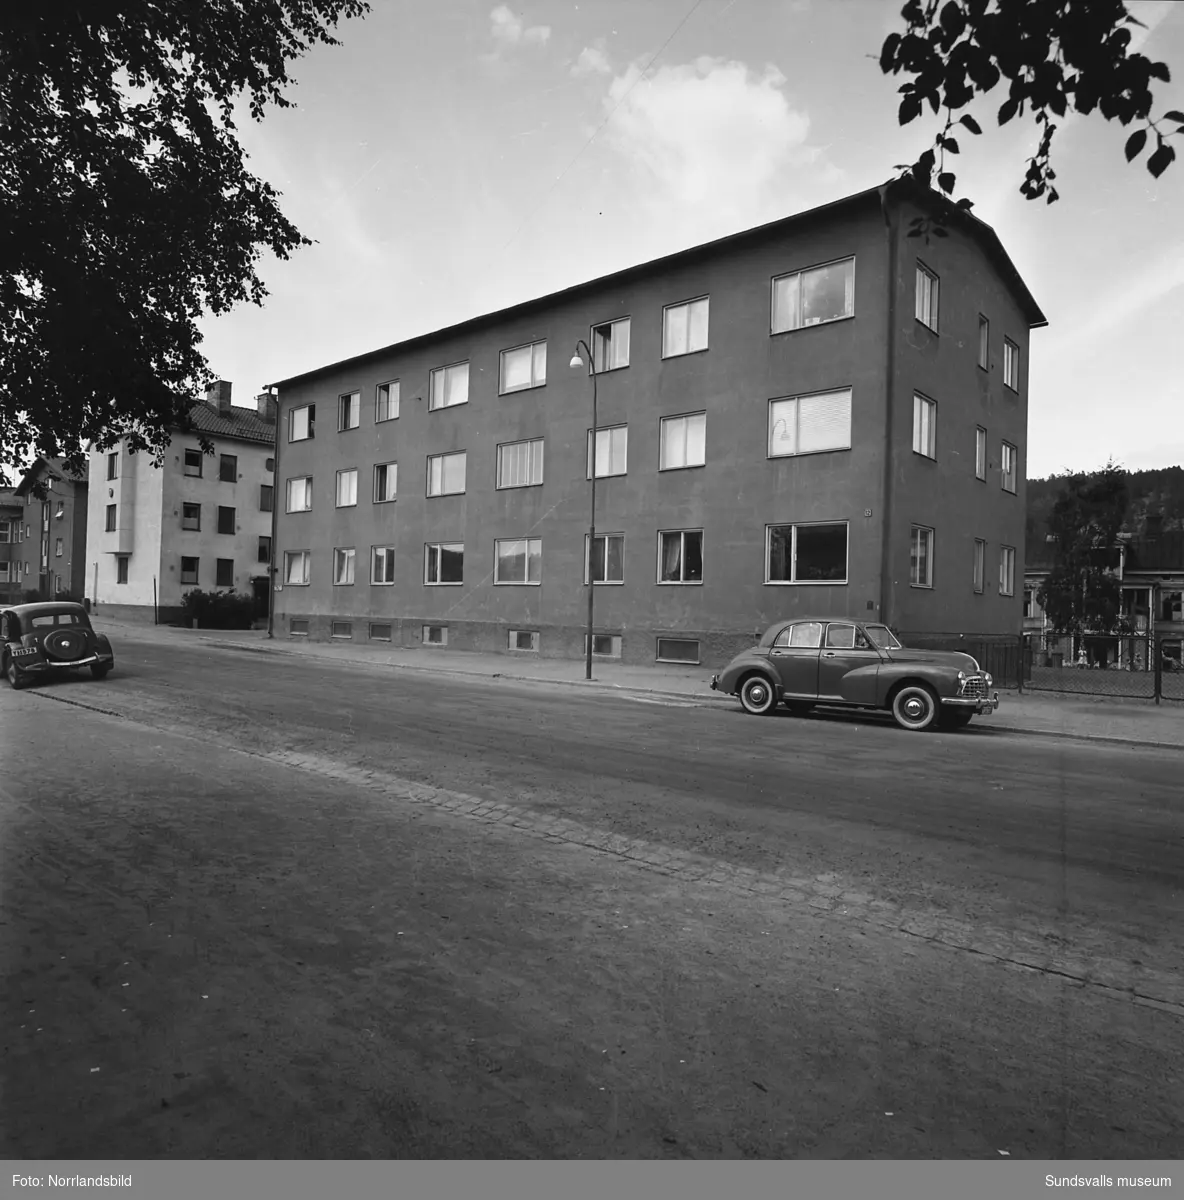 Exteriörbilder på flerfamiljshus i kvarteret Vinkeln på Västermalm. Storgatan, Väderkvarnsbacken, Grönborgsgatan.